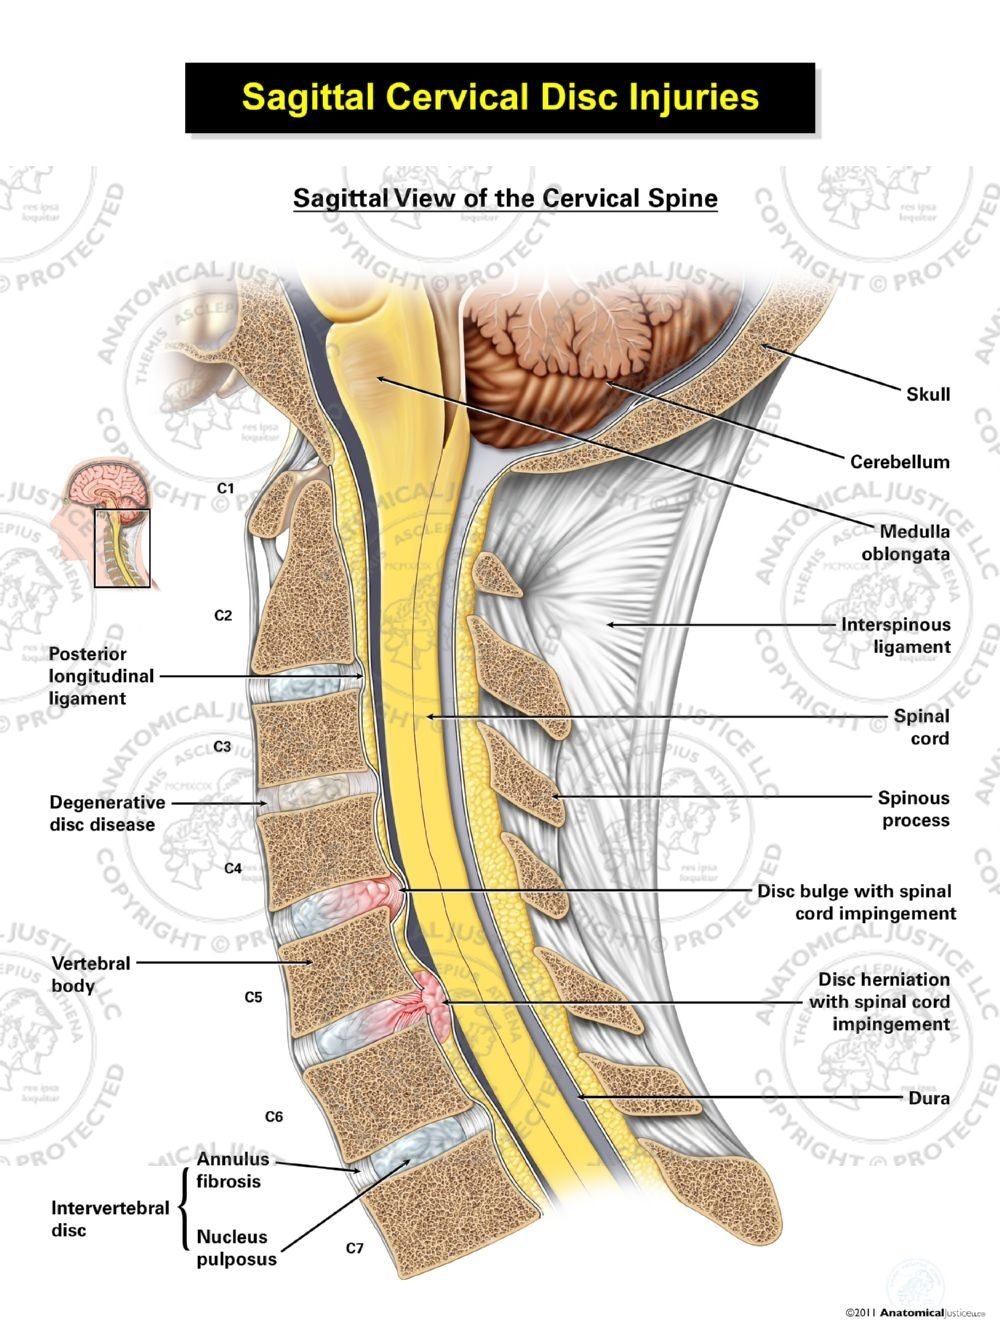 Sagittal Cervical Disc Injuries